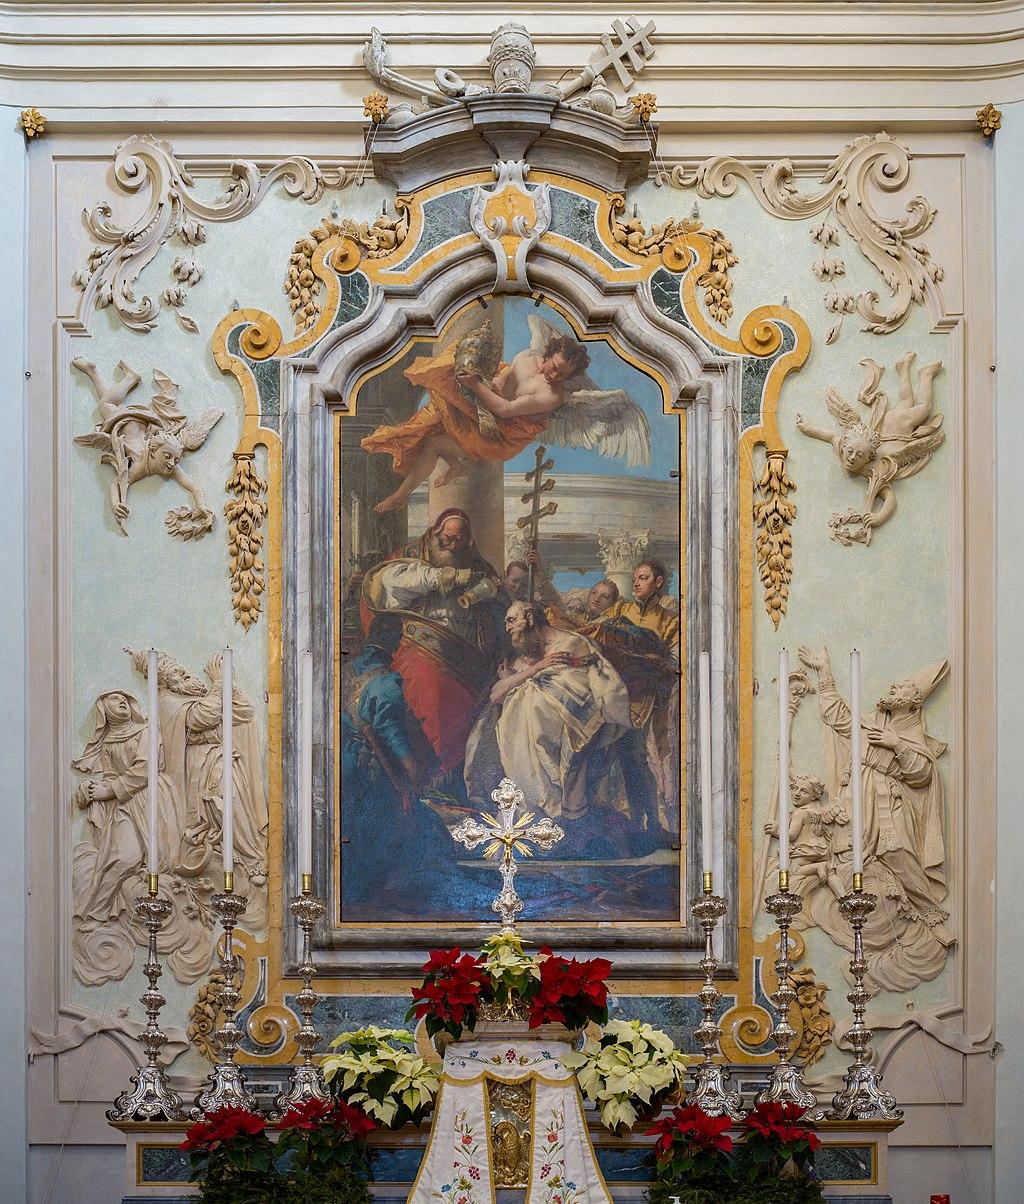 من لوحات جيوفاني باتيستا تيبولو، مذبح كنيسة سان سيلفسترو